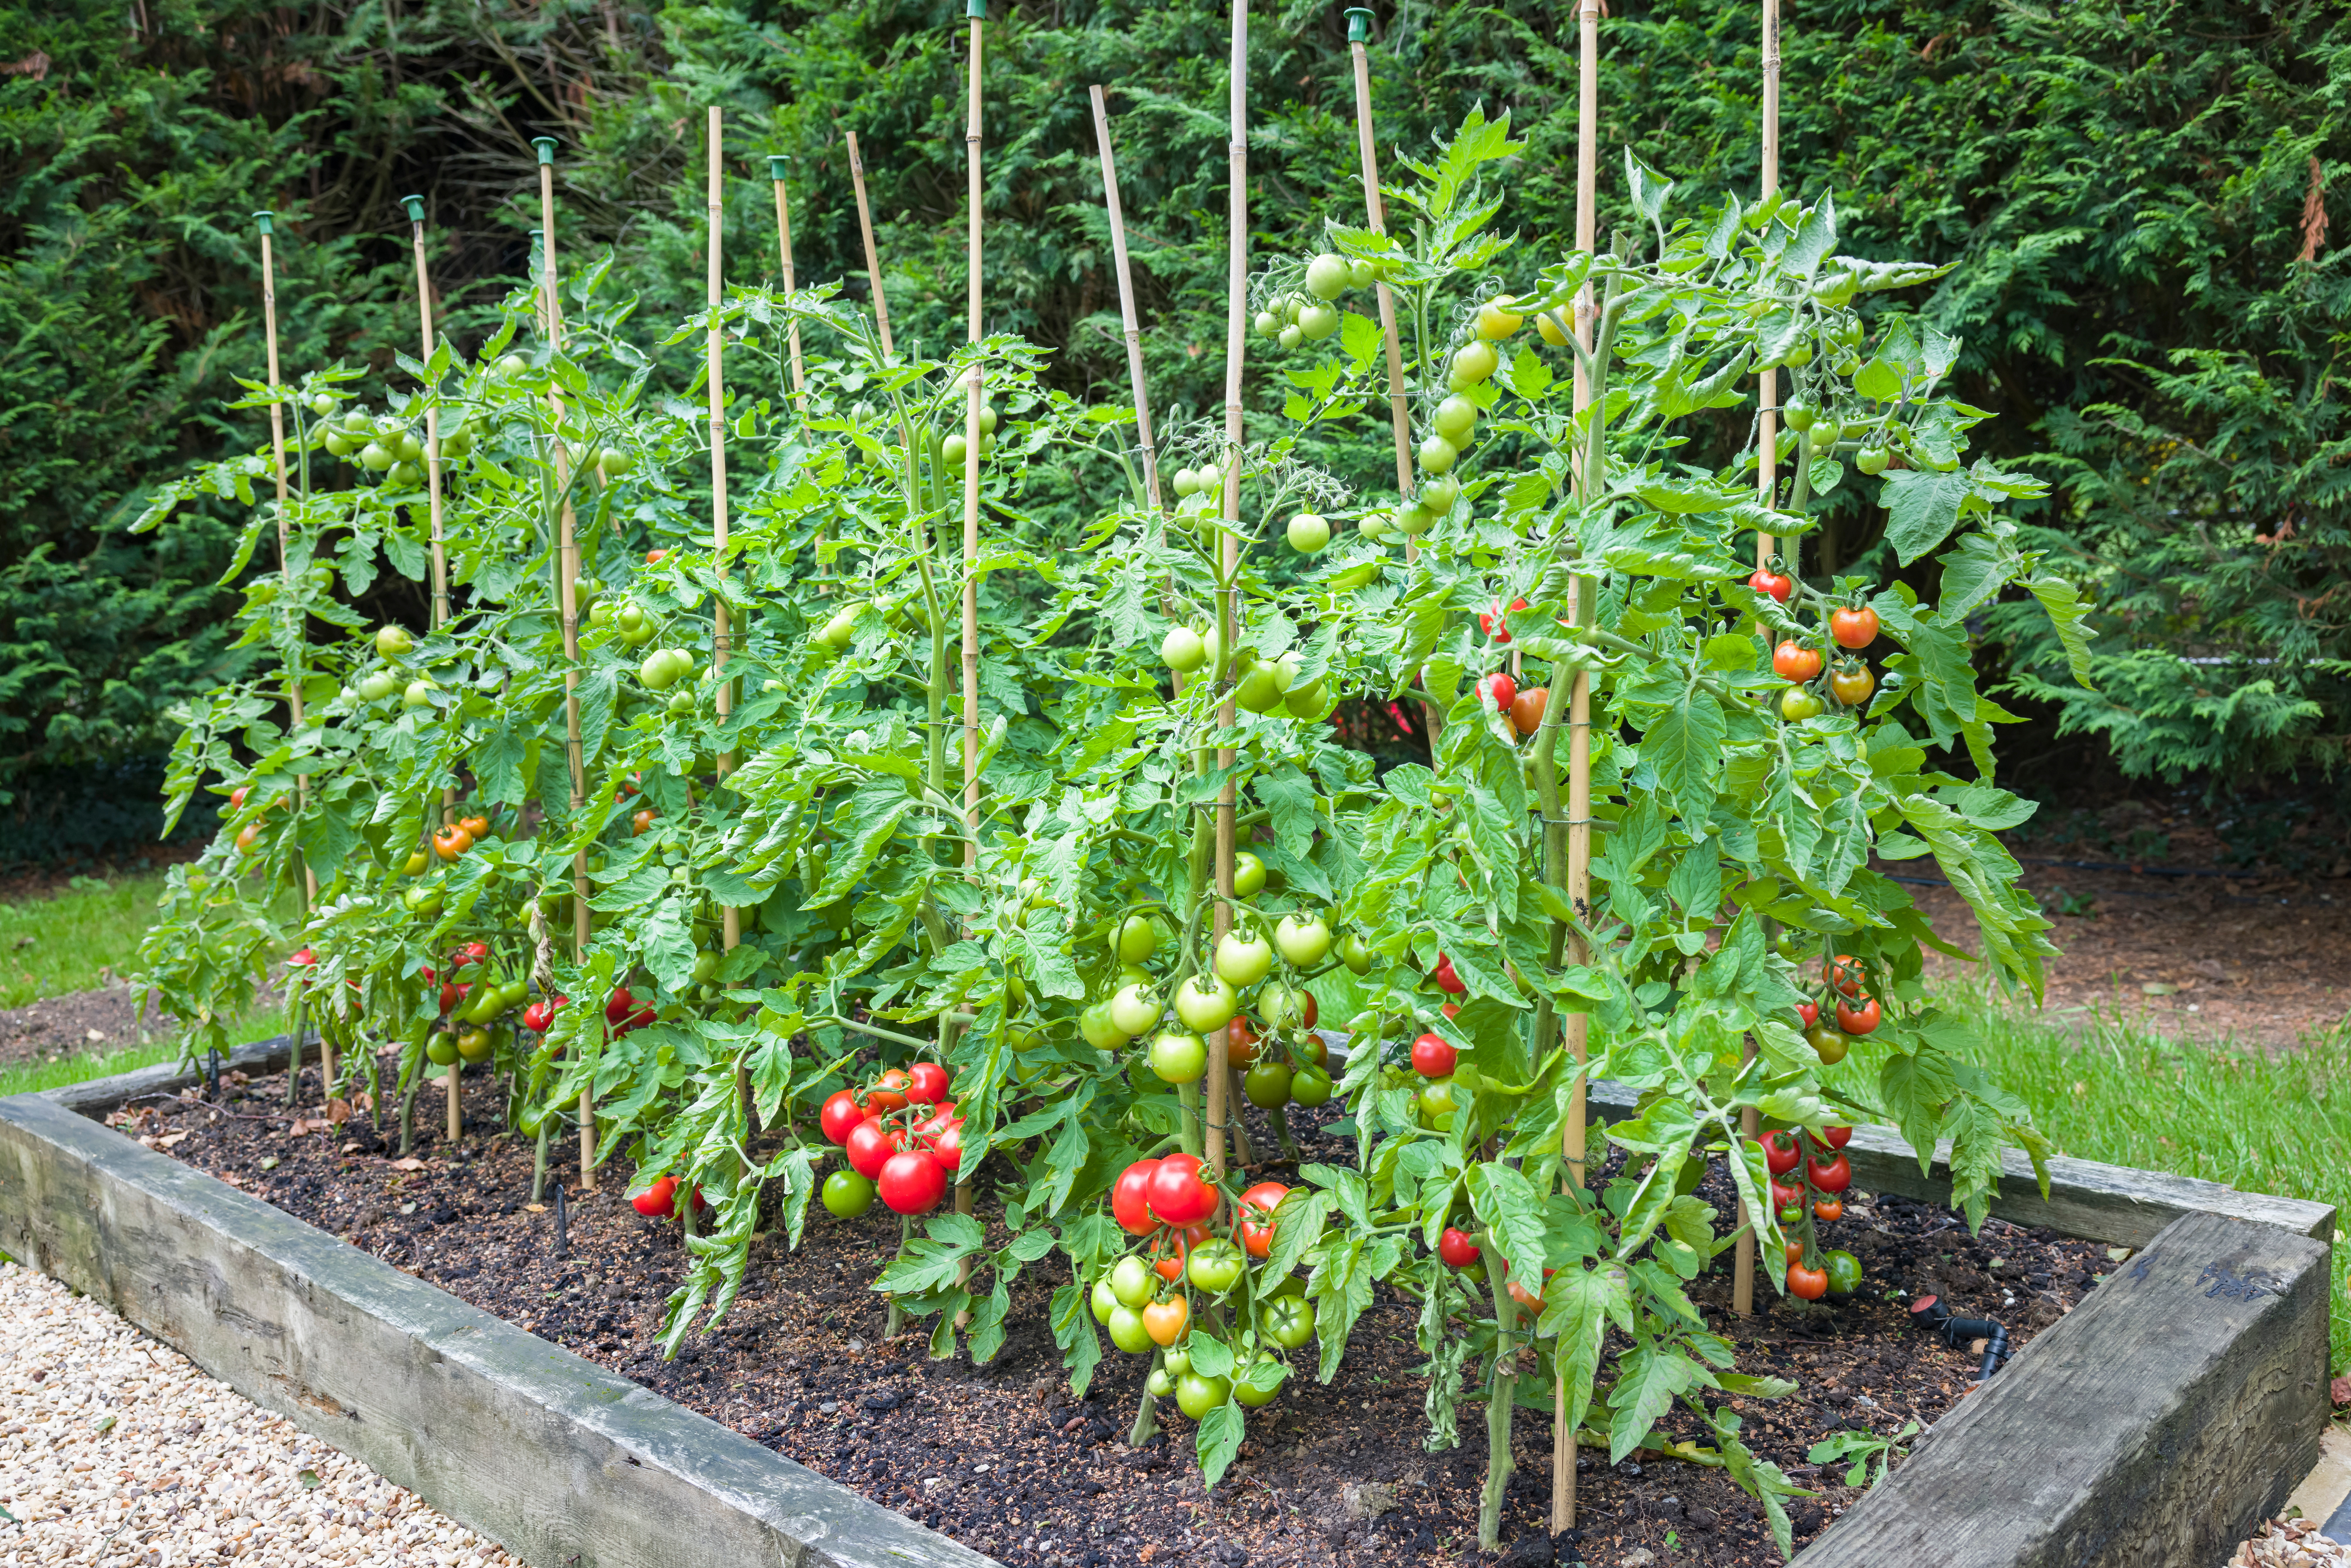 Les tomates sont incontournables dans le potager, si la plantation en tant que telle n’est pas bien compliquée, le positionnement des plants de tomates peut s’avérer essentiel. Copyright (c) 2021 Paul Maguire/Shutterstock.